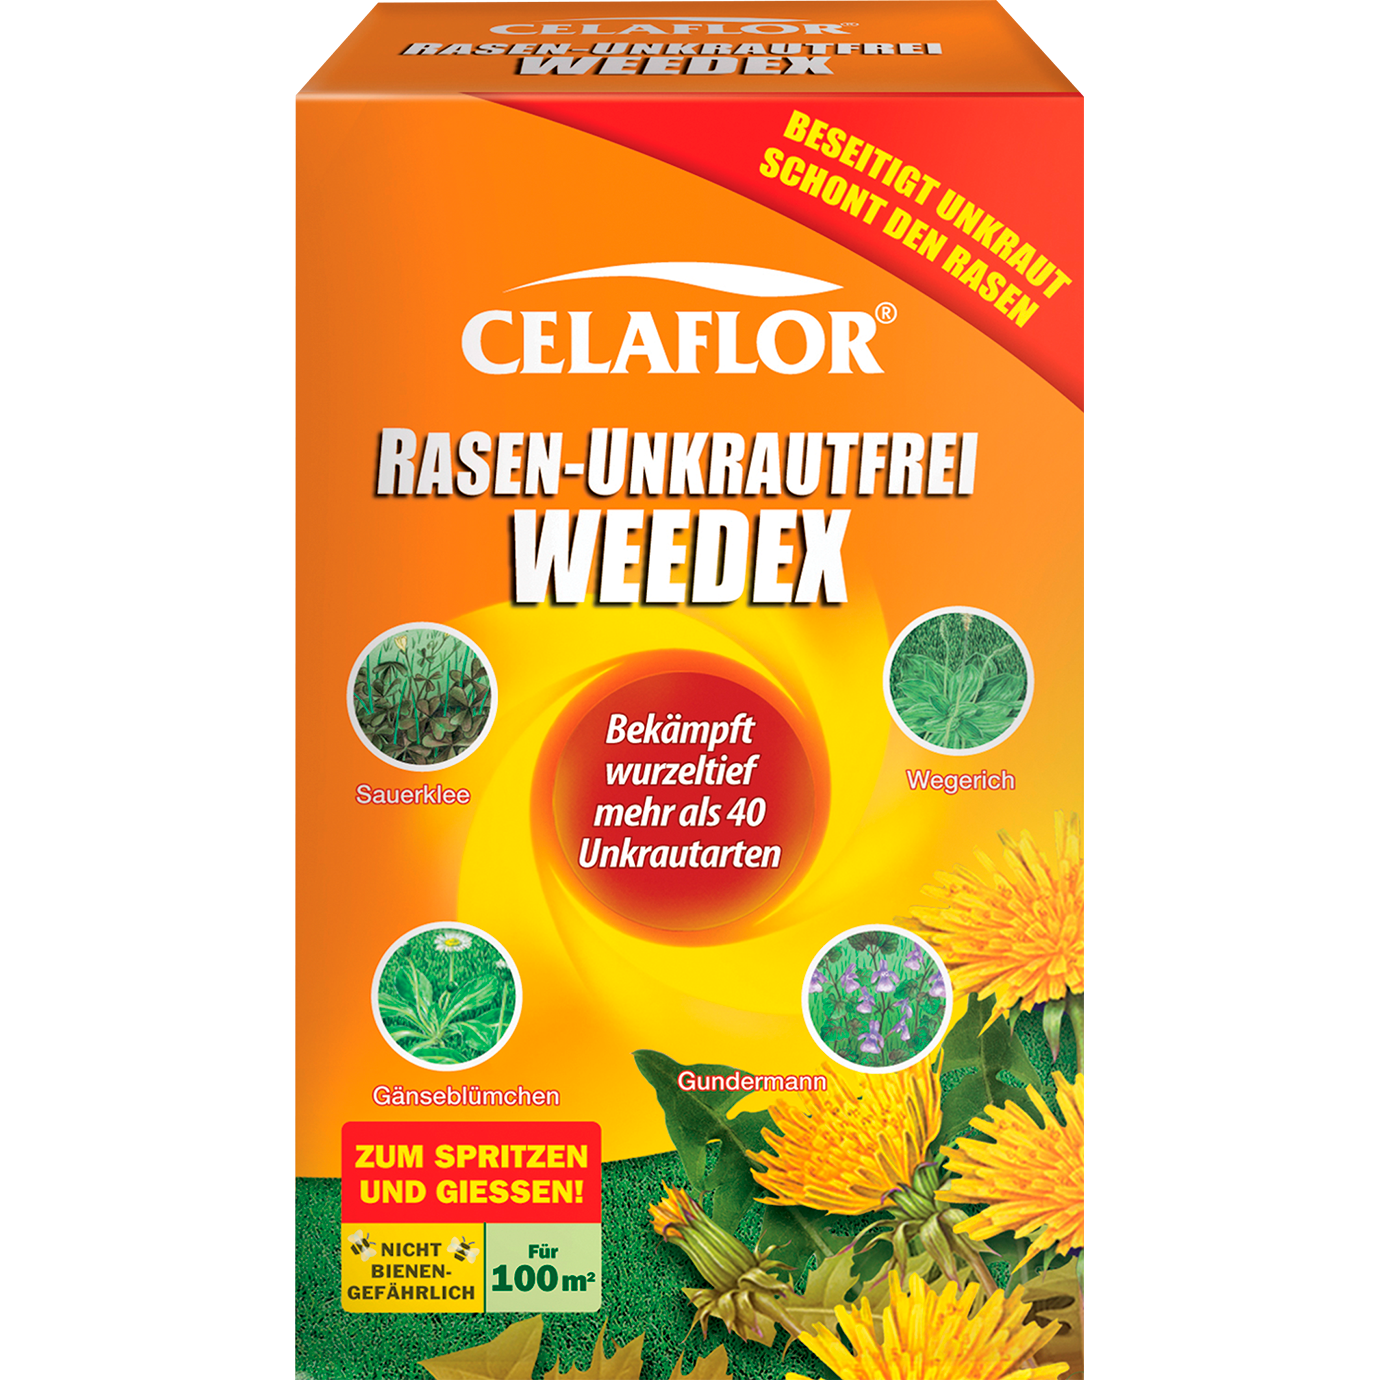 Celaflor® Rasen-Unkrautfrei Weedex